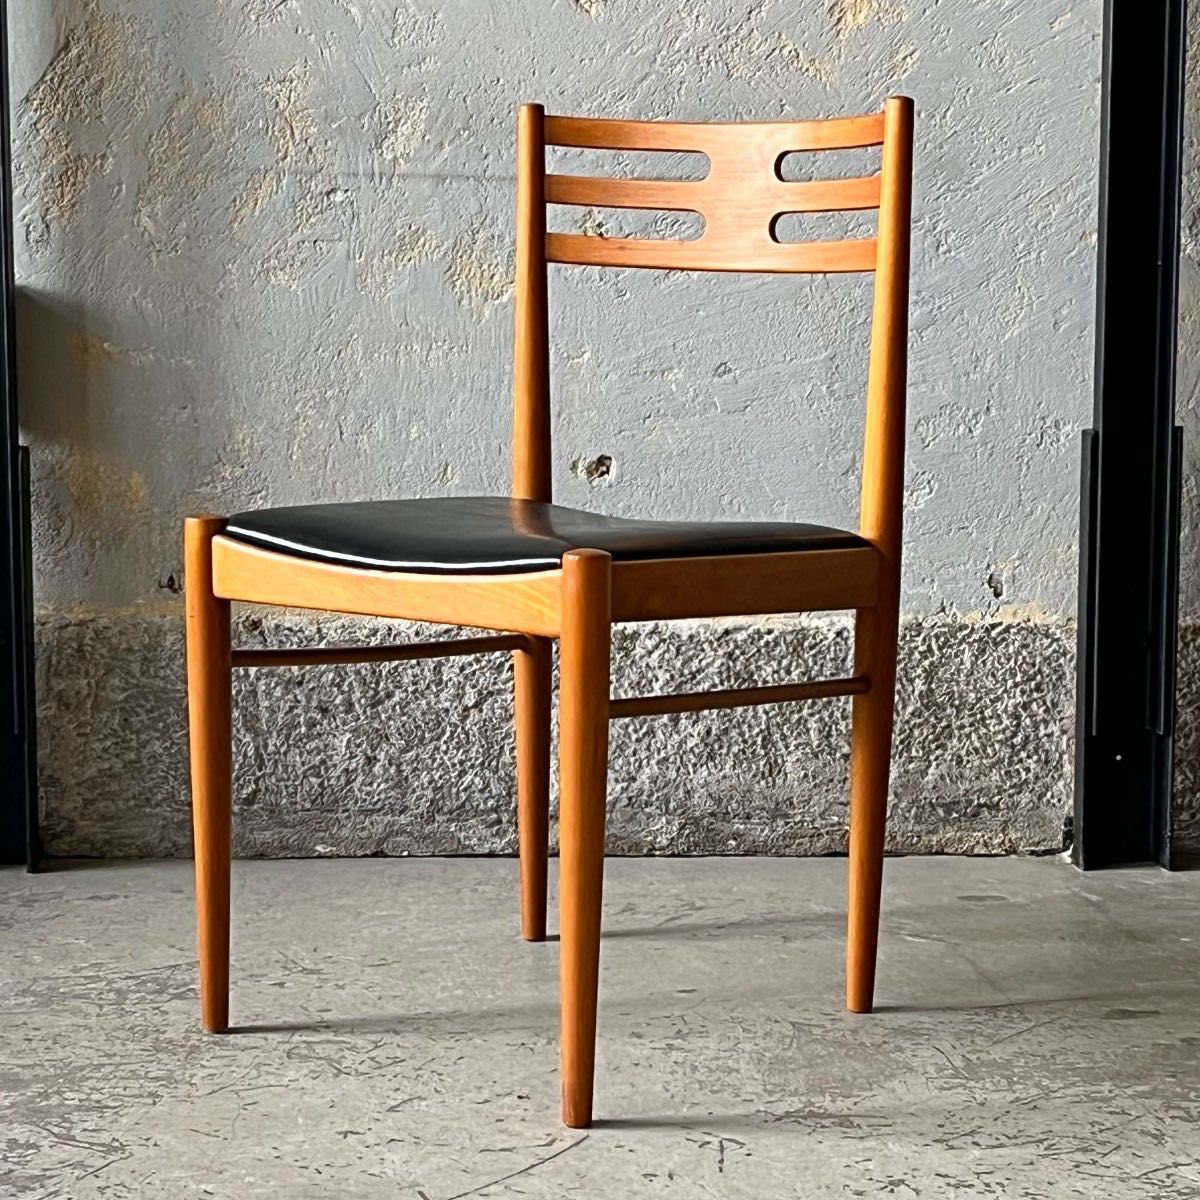 Drewniane krzesła w stylu mid-century modern lata 70.